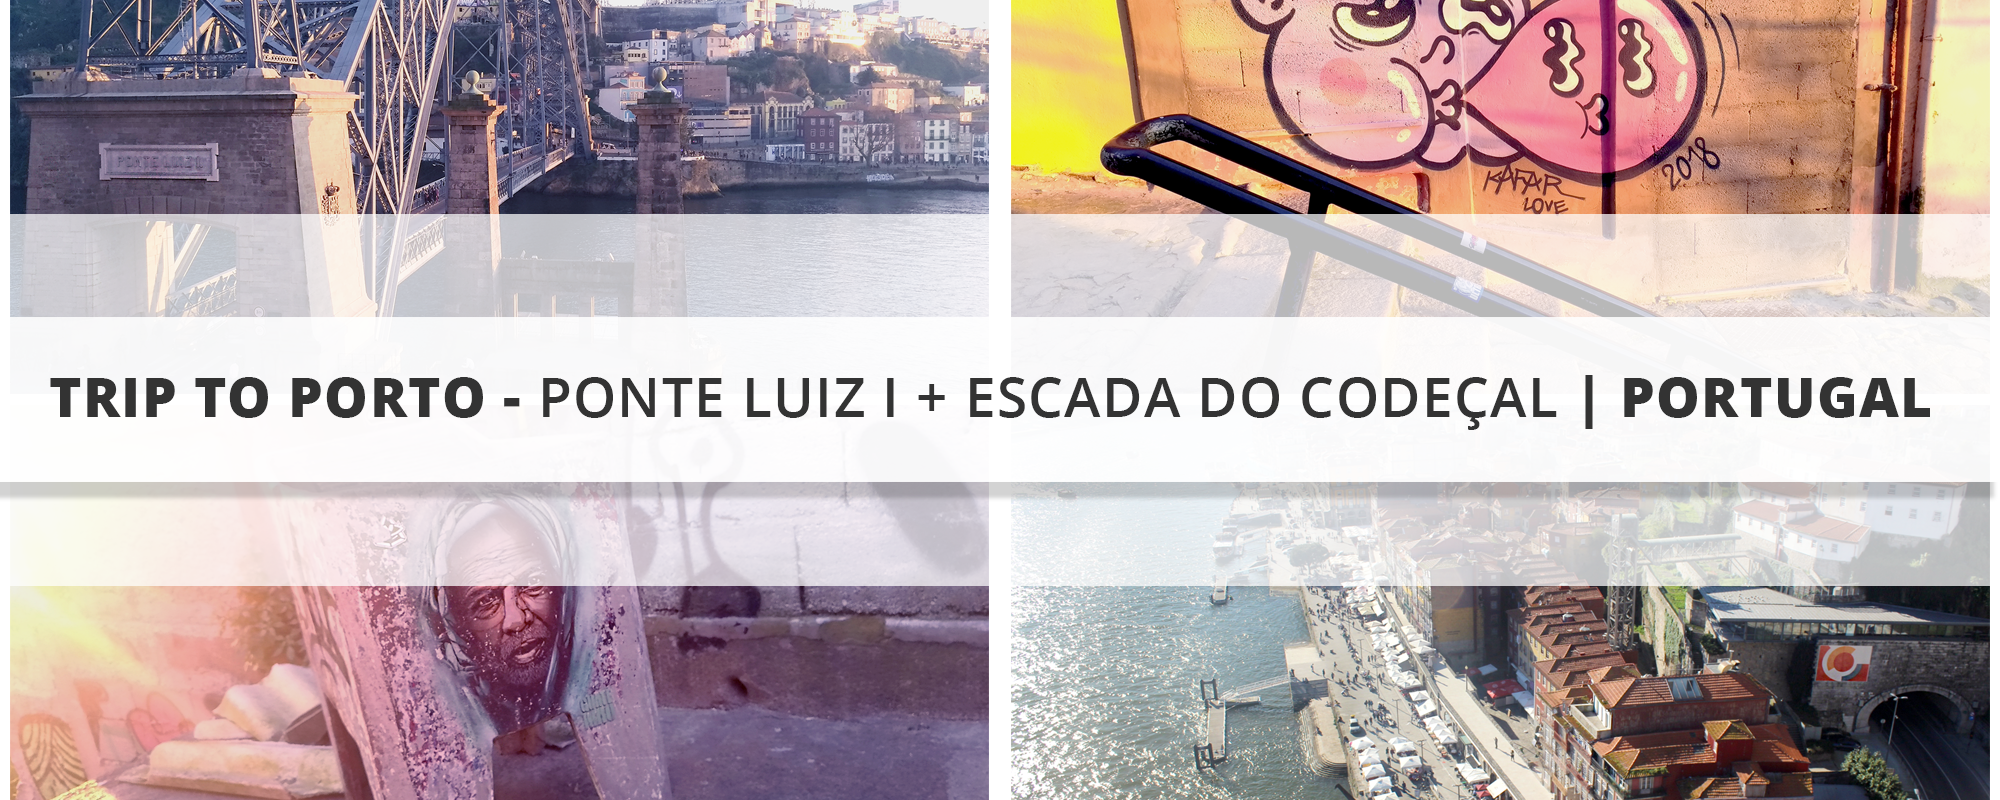 Trip to Porto - Ponte Luiz I + Escada do Codeçal | Portugal